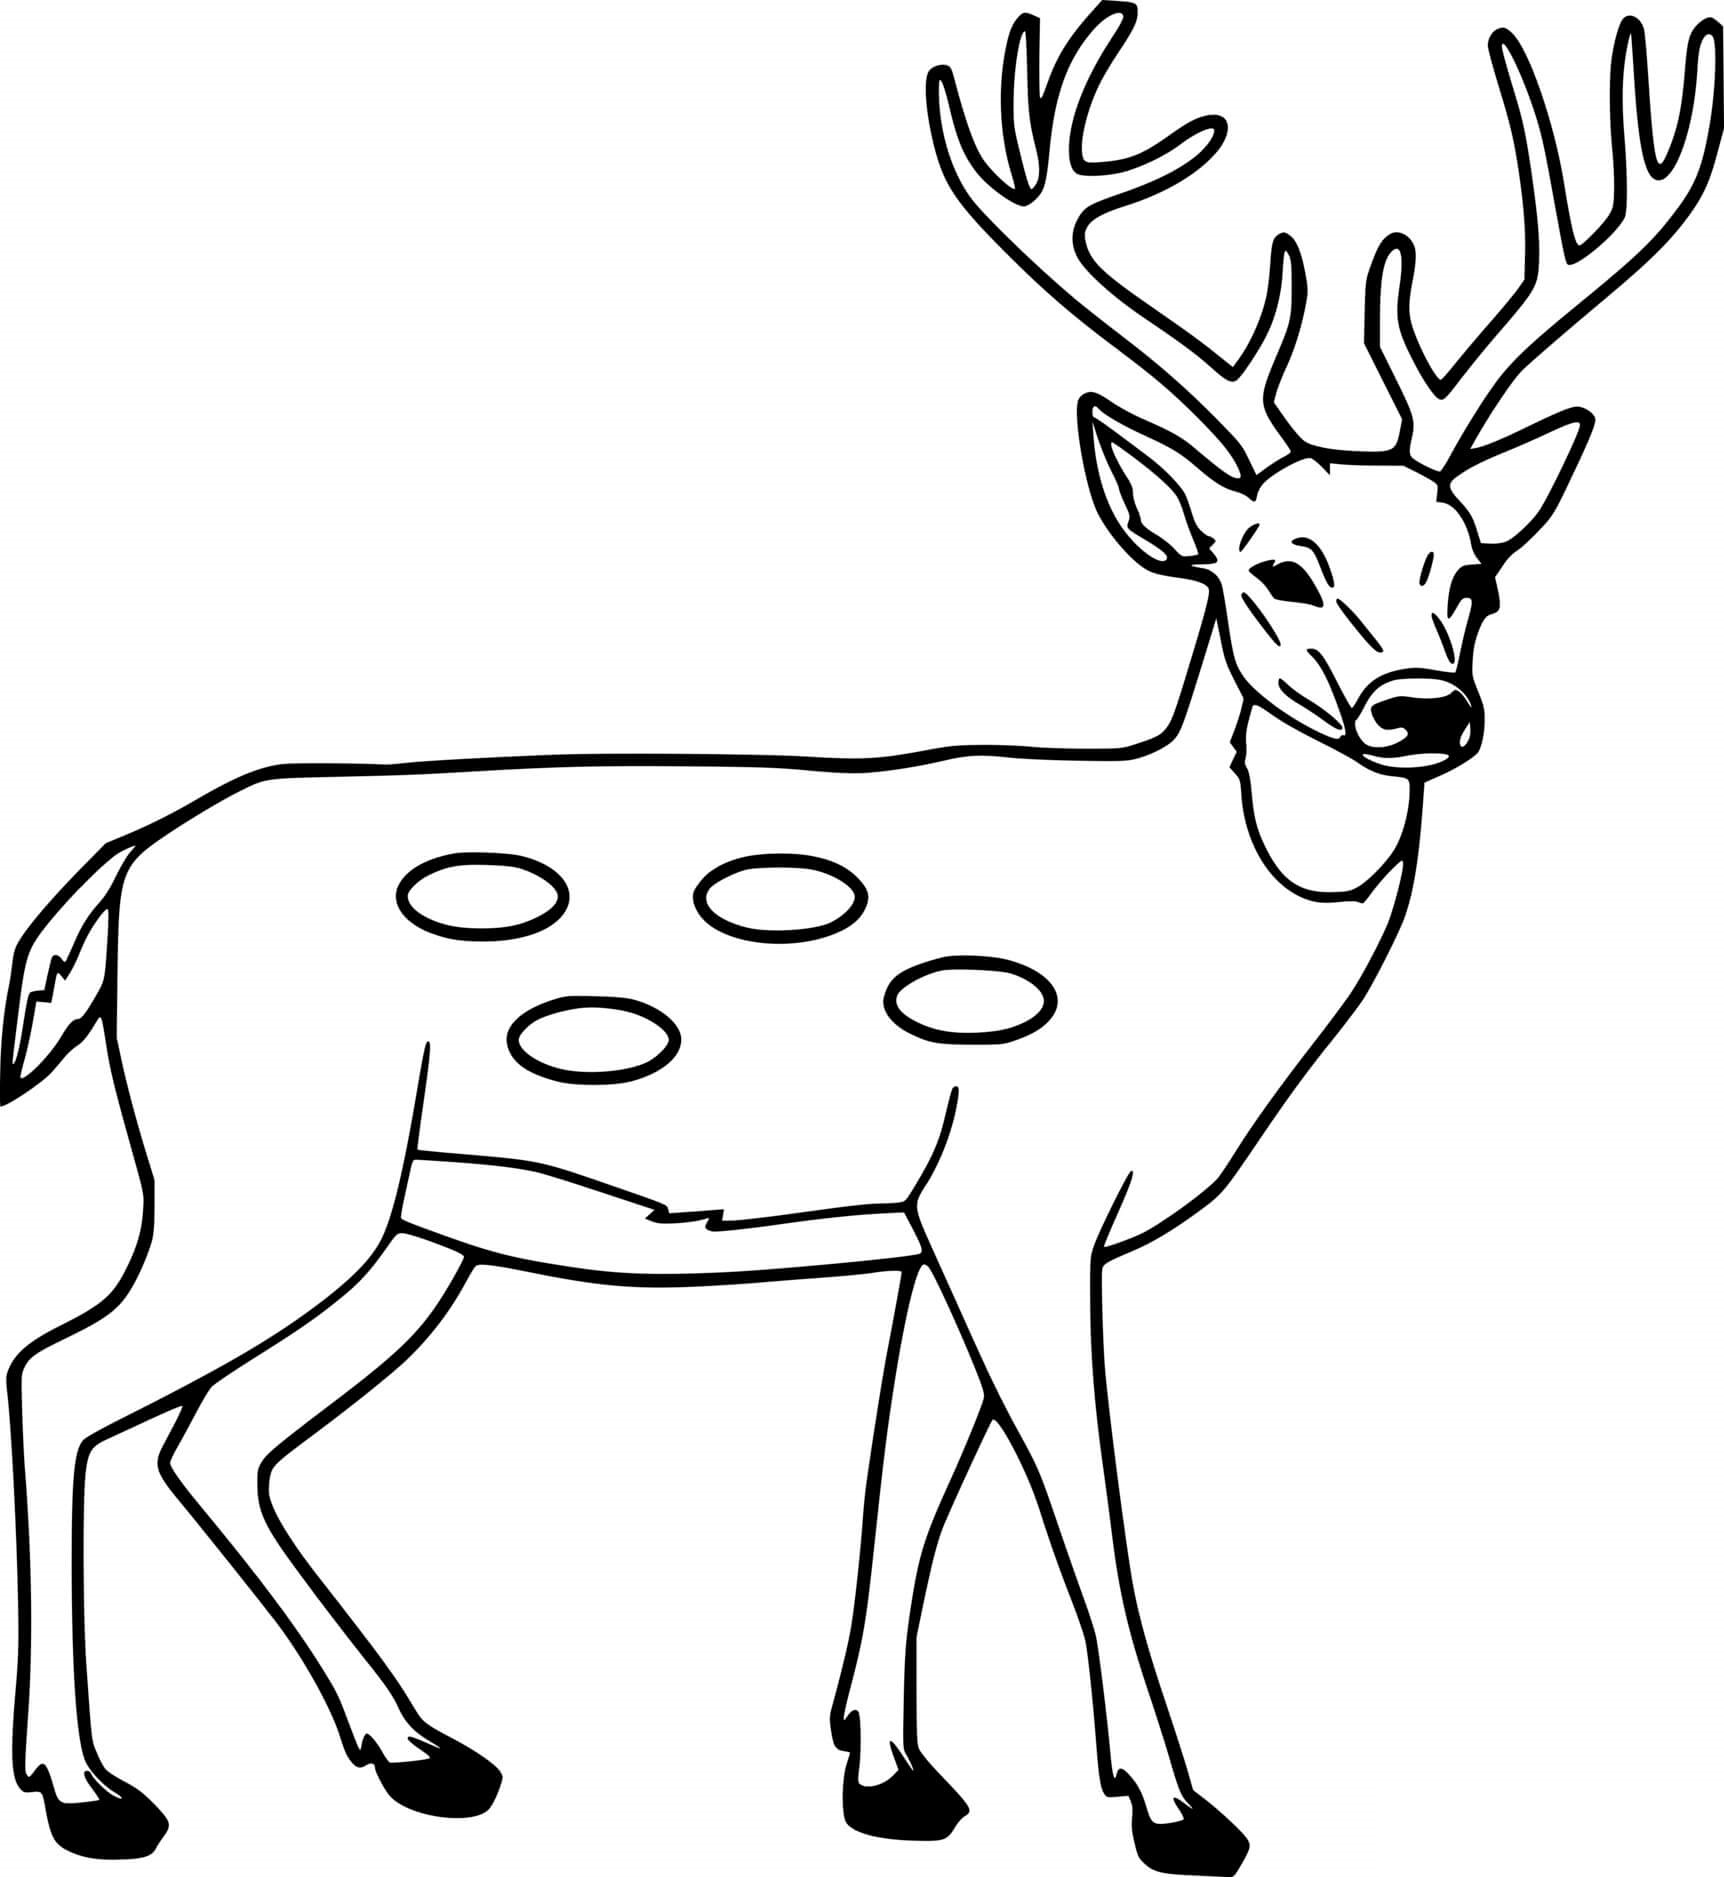 Simple Sika Deer Coloring Page